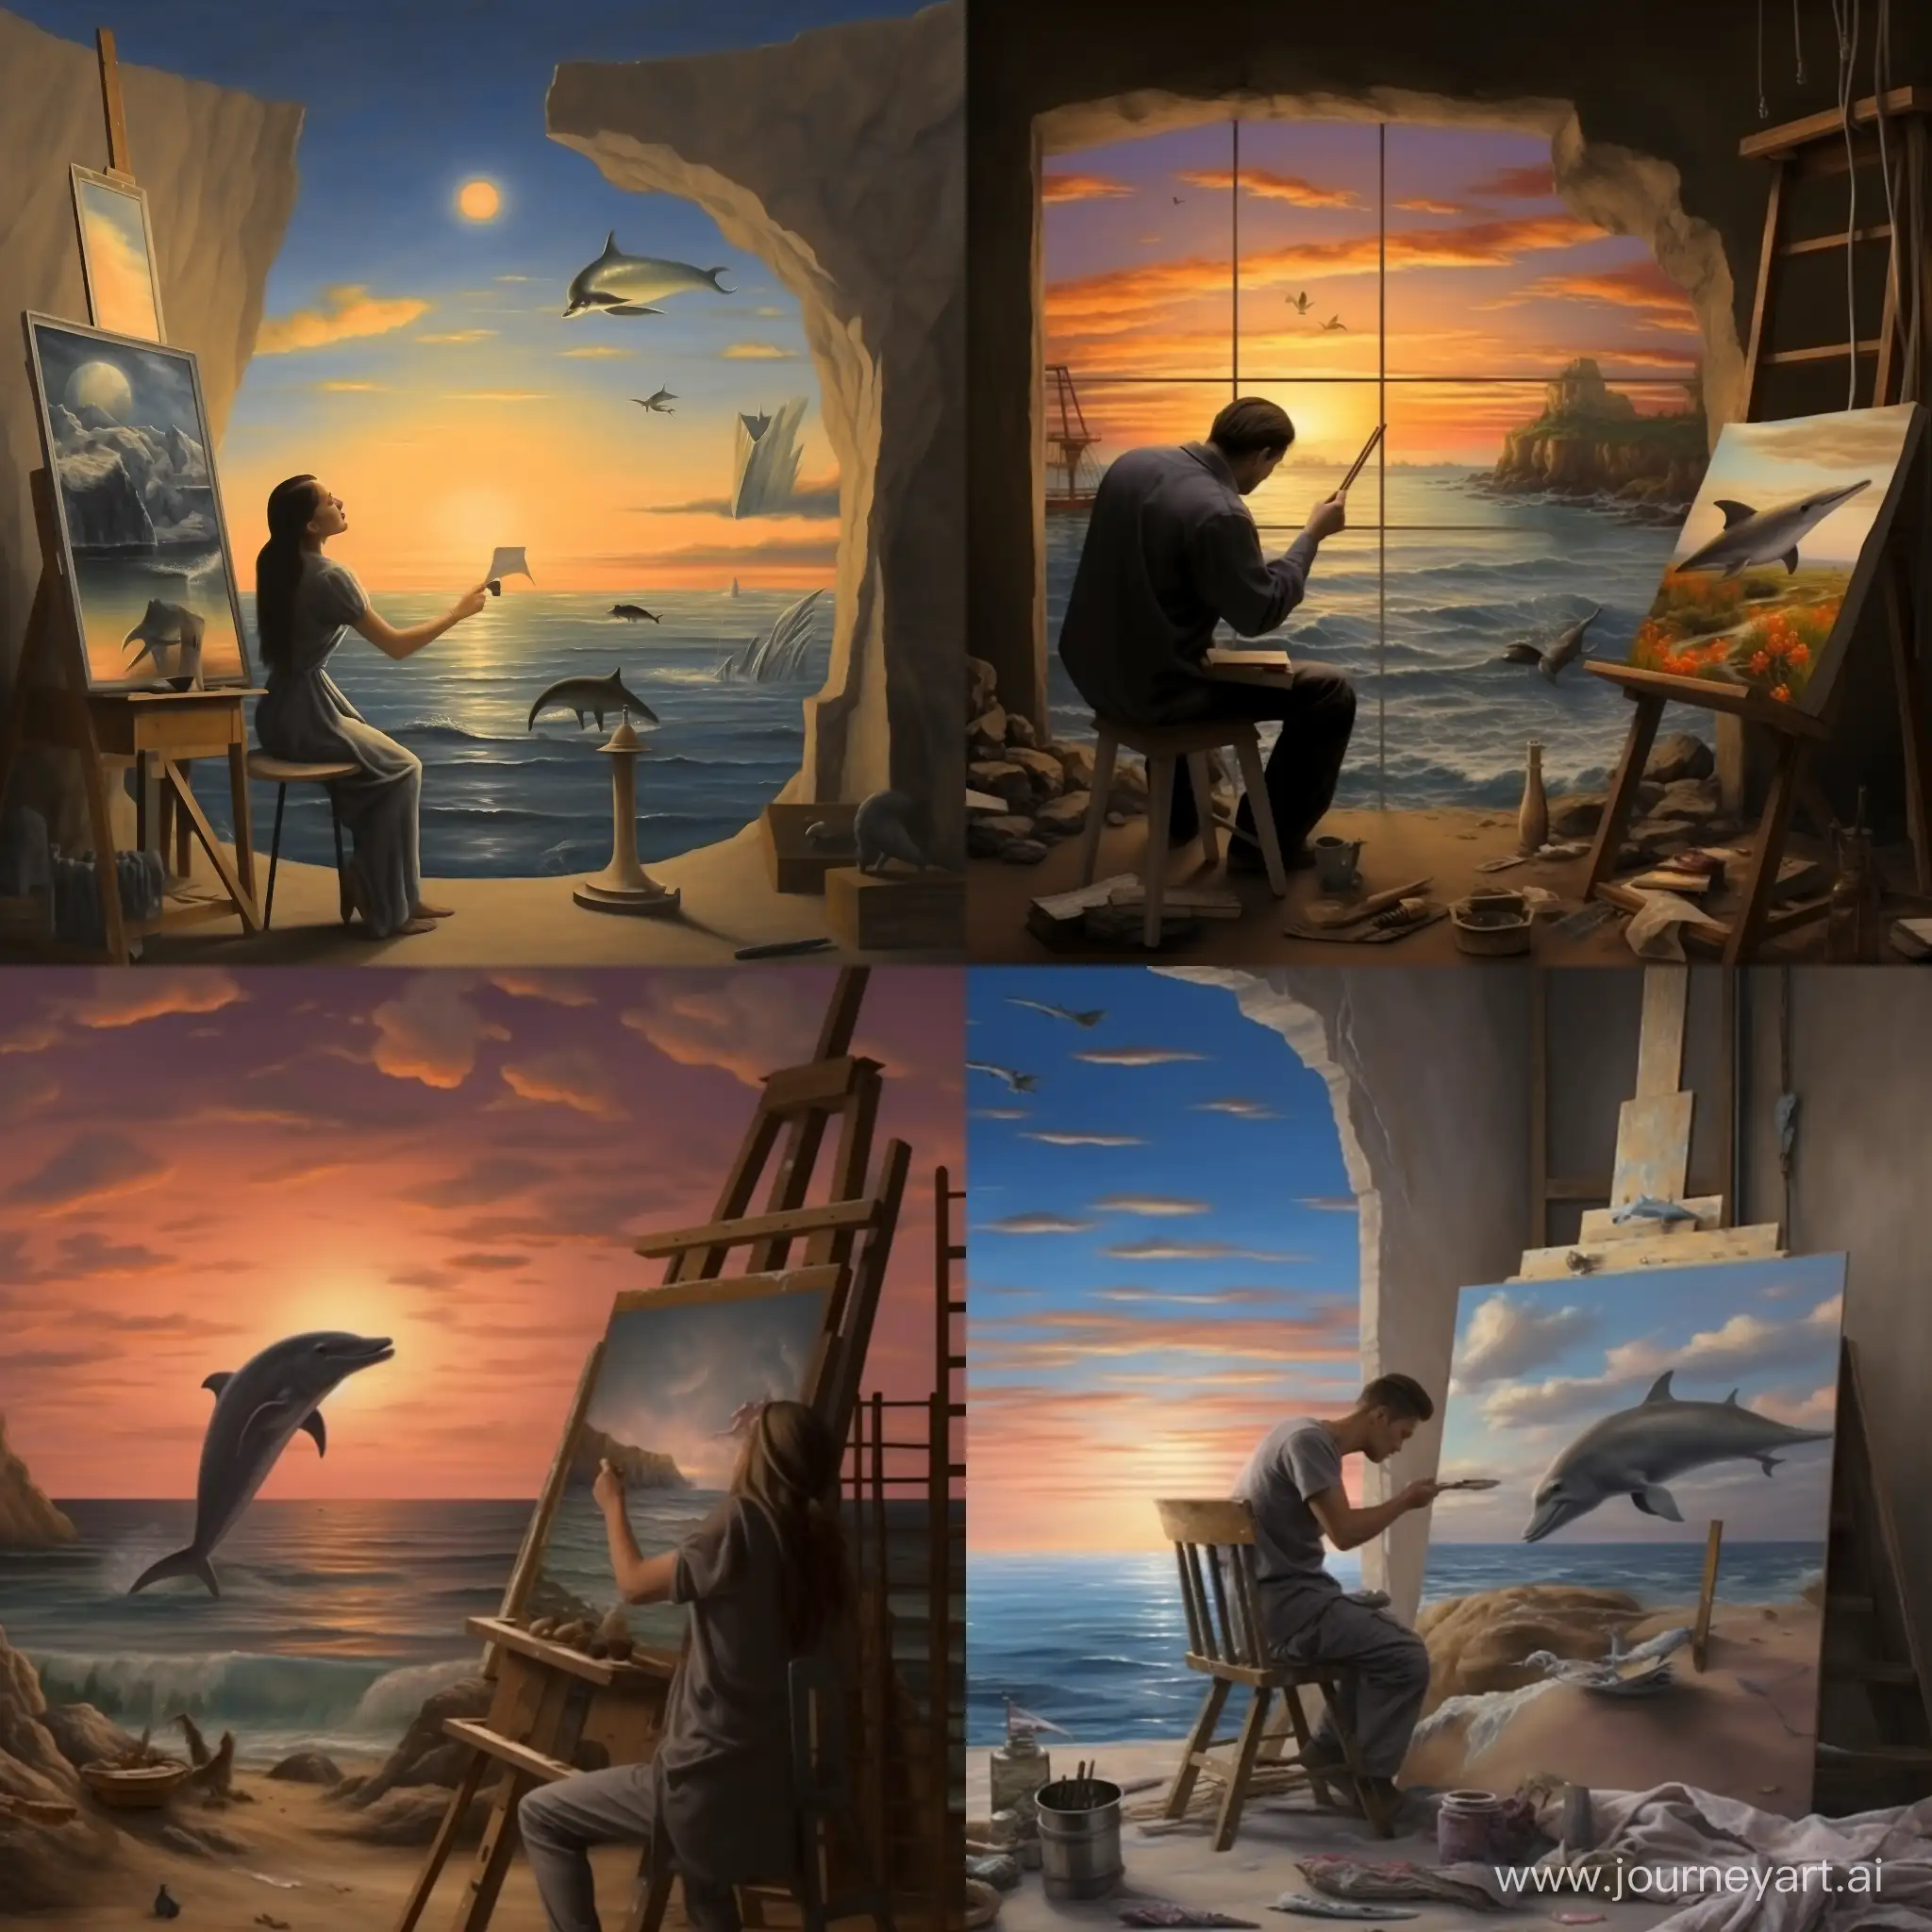 Художник стоит у мольберта и рисует морской пейзаж, рядом стоит ванна из ванны на художника смотрит любопытный дельфин. художественный арт.